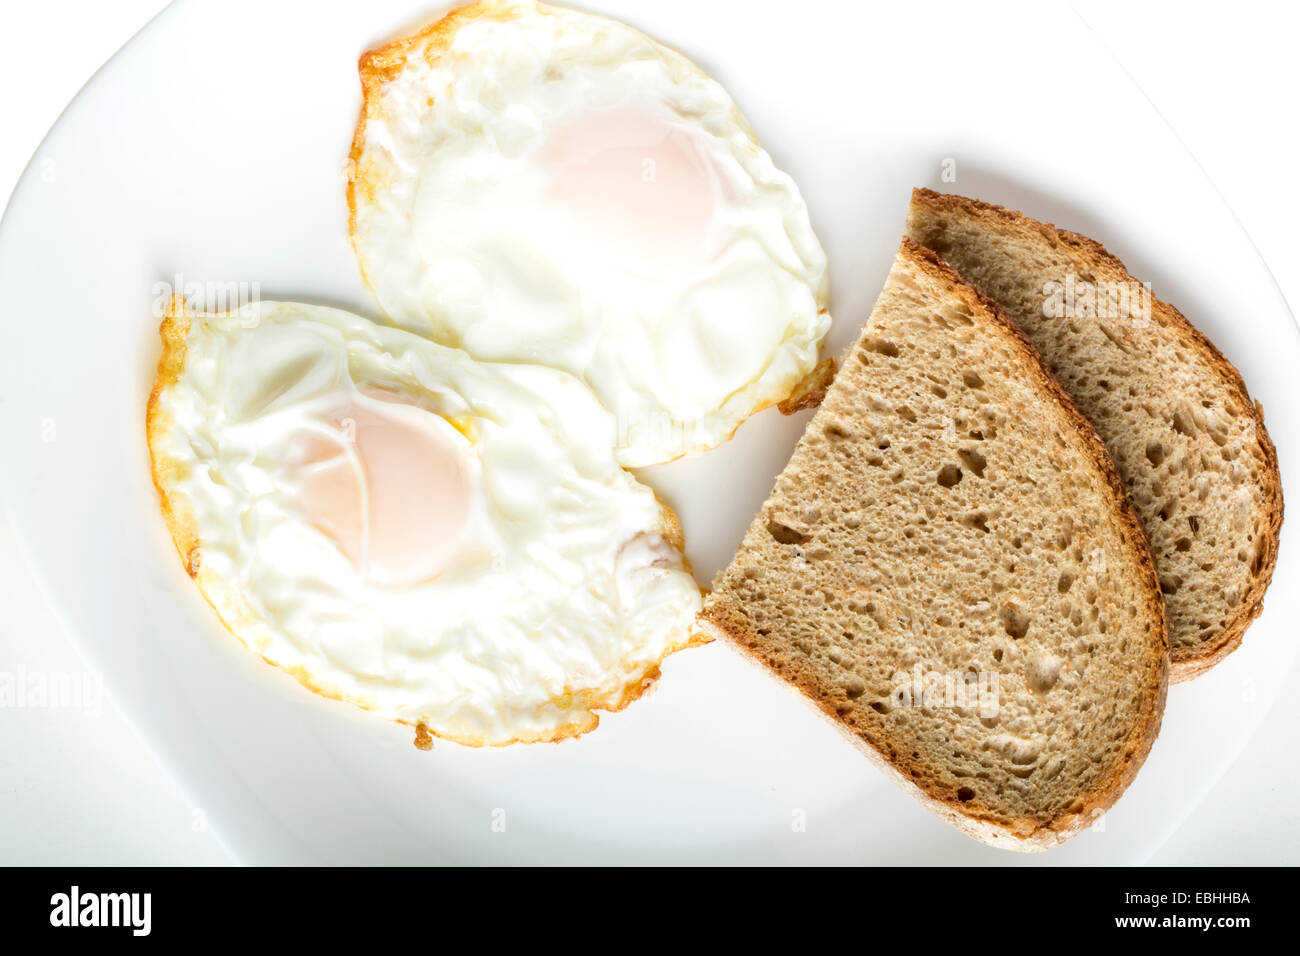 Deux œufs au salami et de pain sur une plaque blanche Banque D'Images